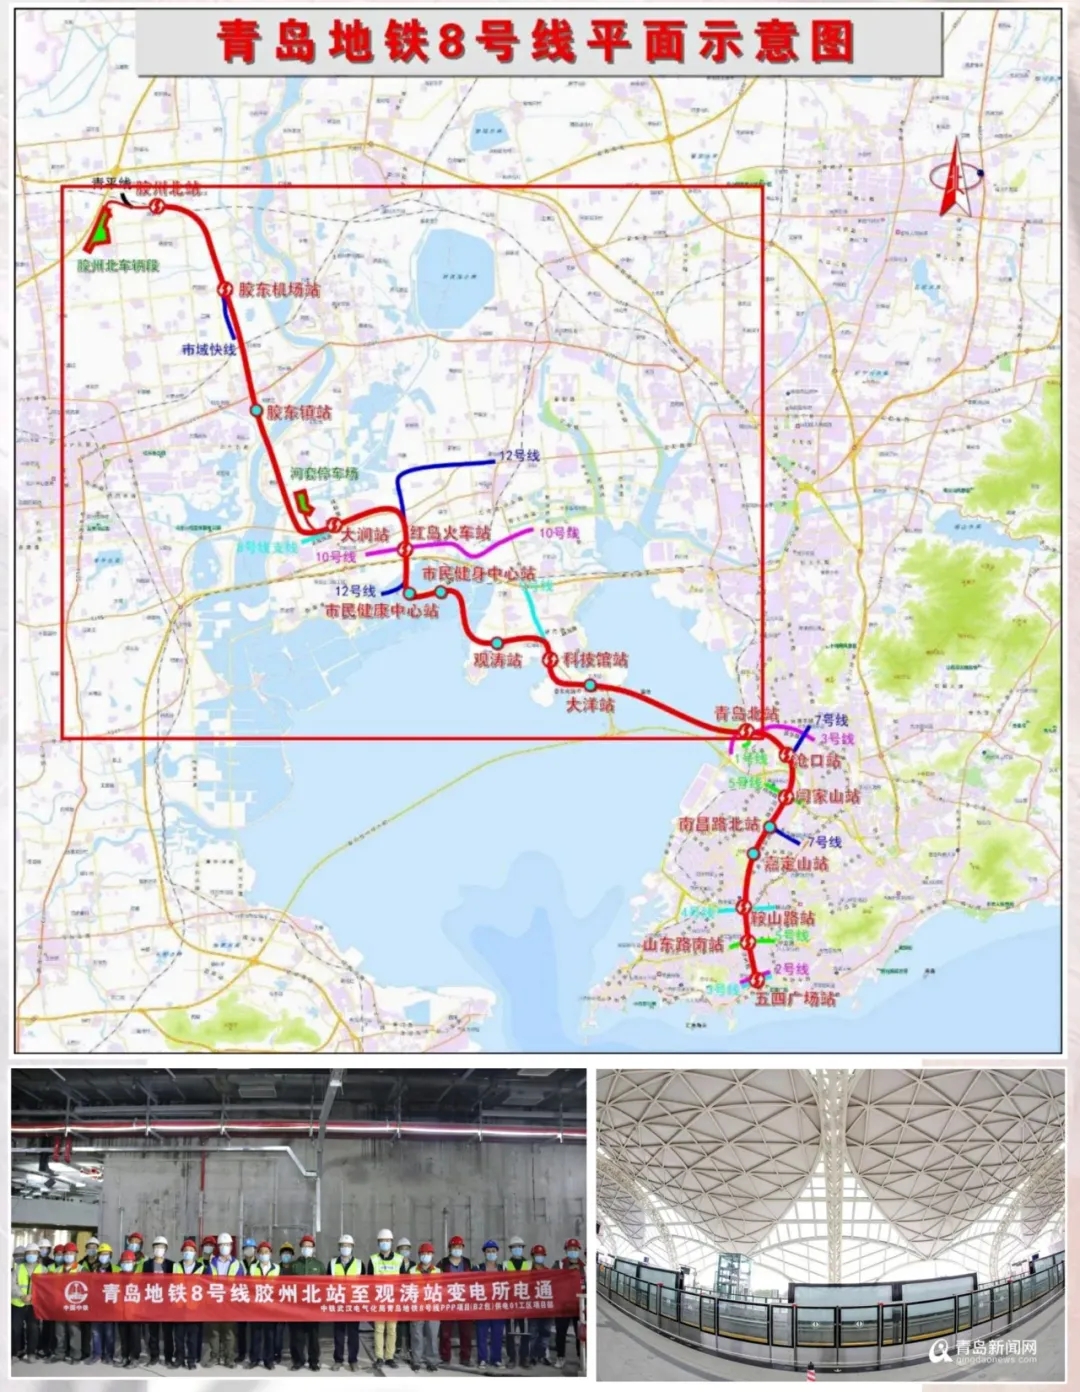 地铁1号线北段,8号线北段年底前通车 城阳,胶州楼市将迎来真正的地铁